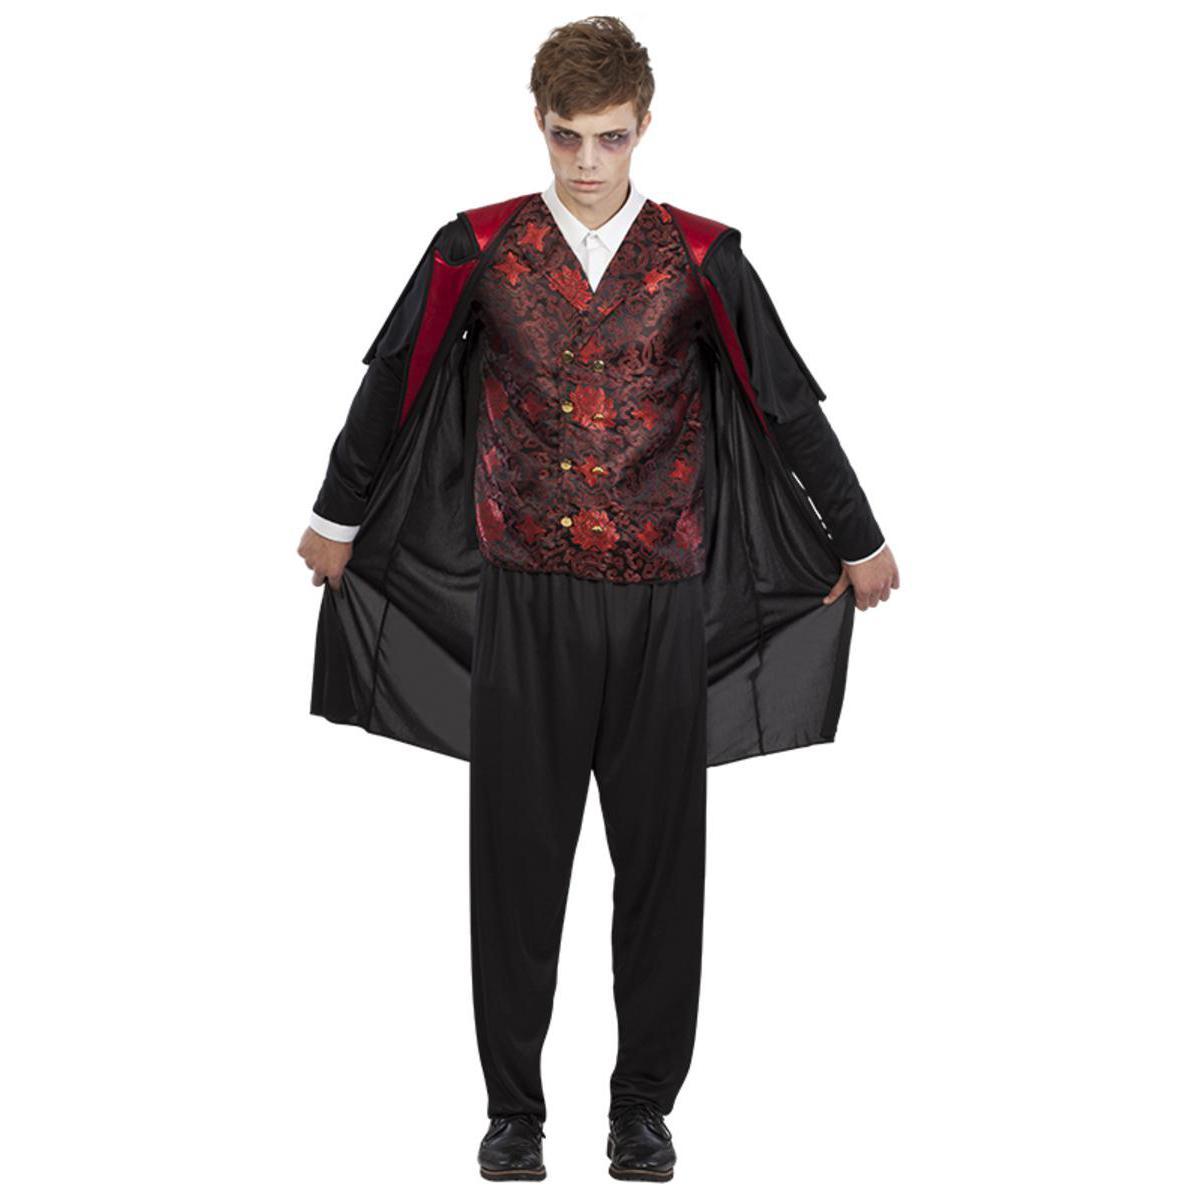 Déguisement vampire homme en polyester - Taille unique - Rouge et noir